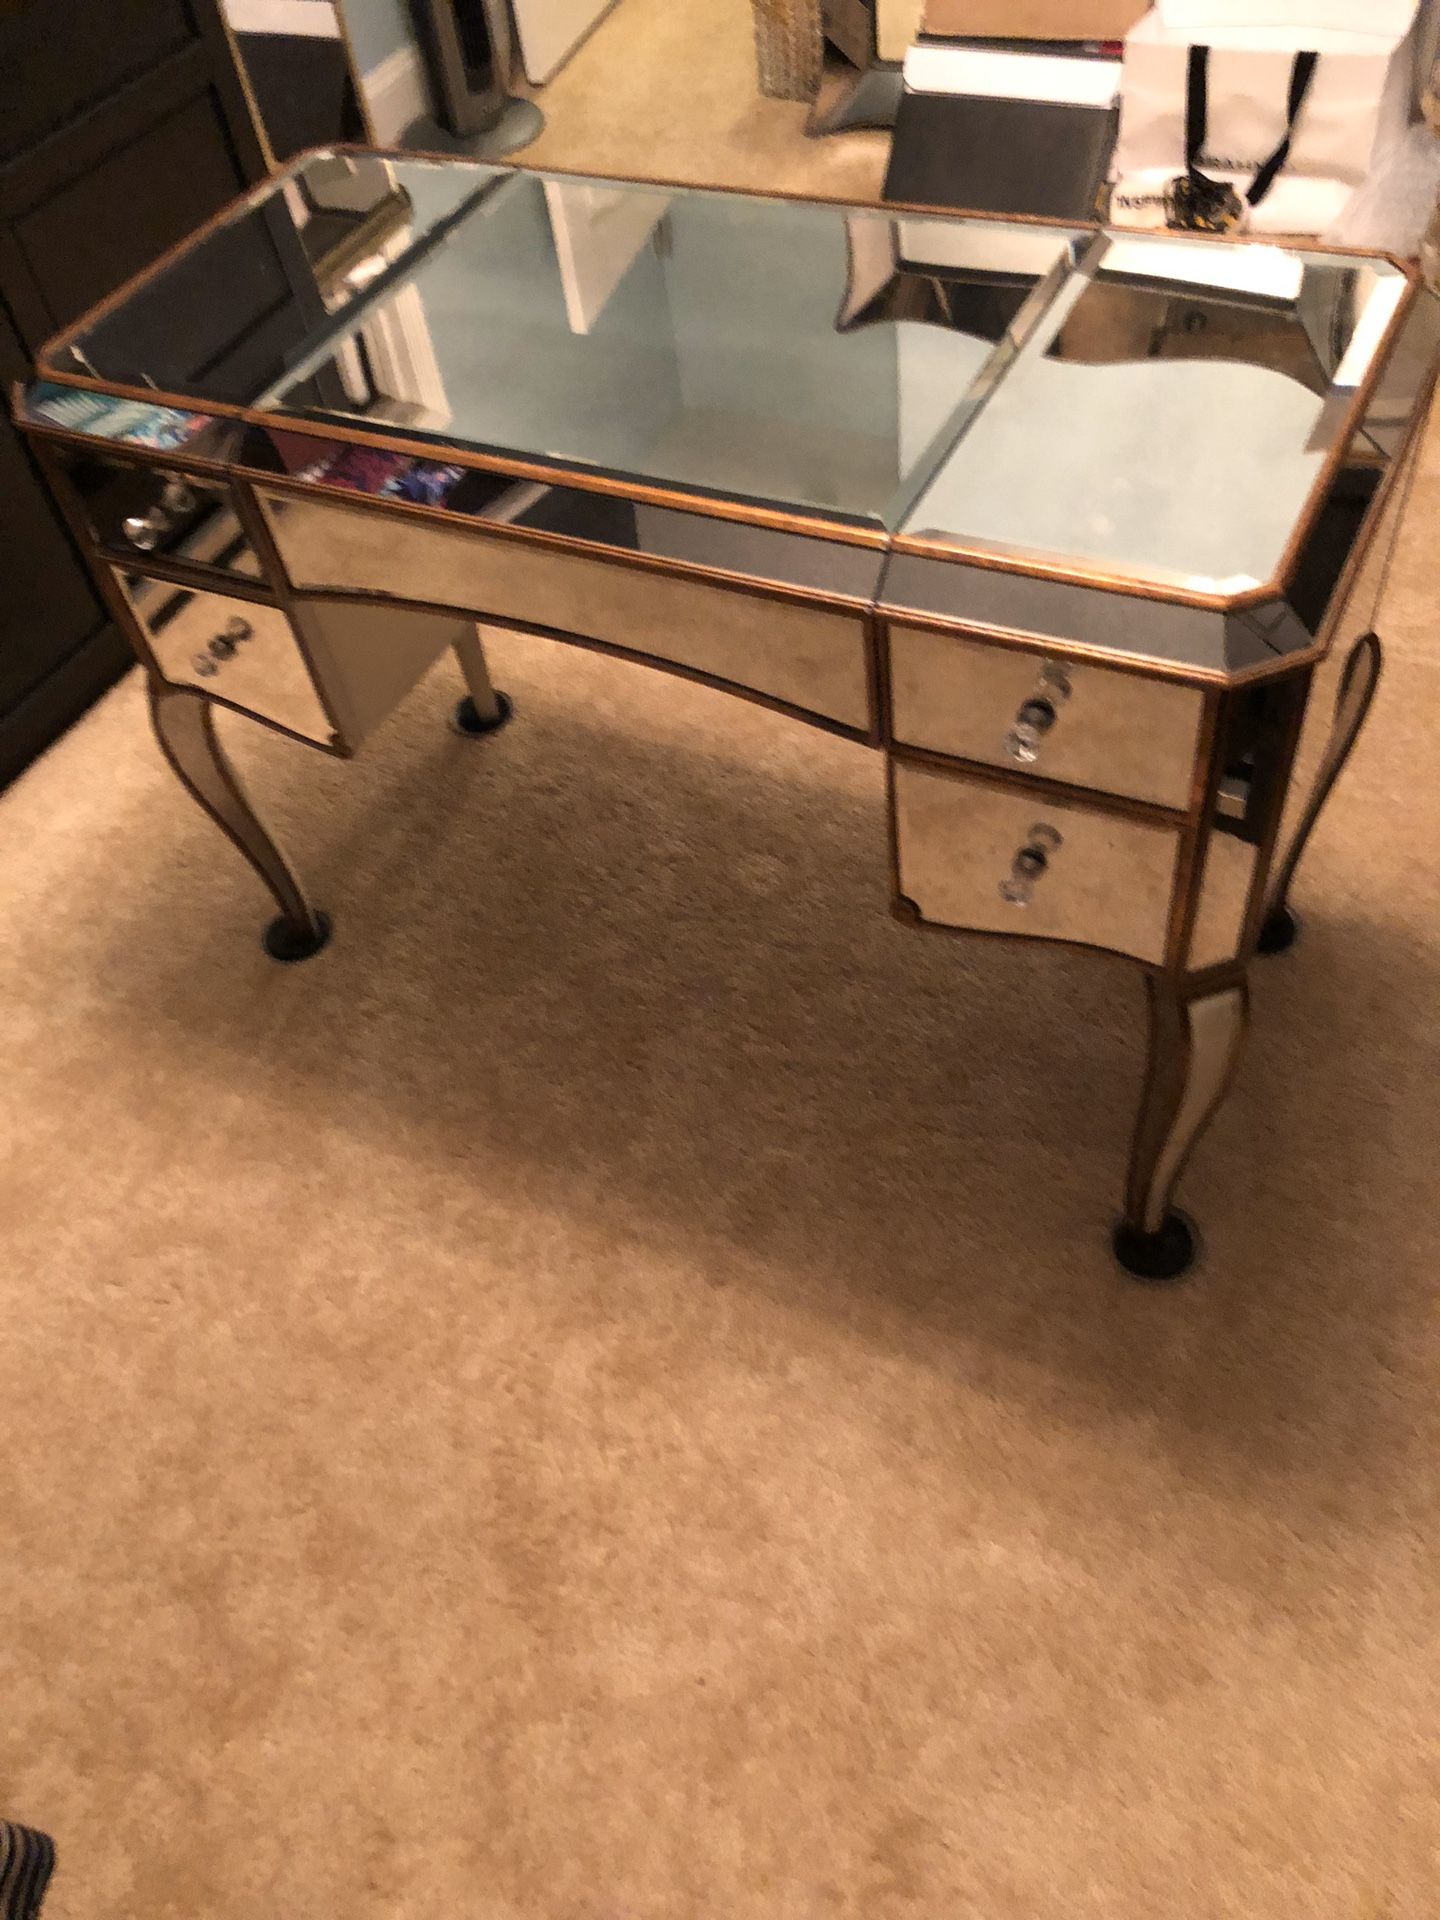 Mirrored vanity or desk